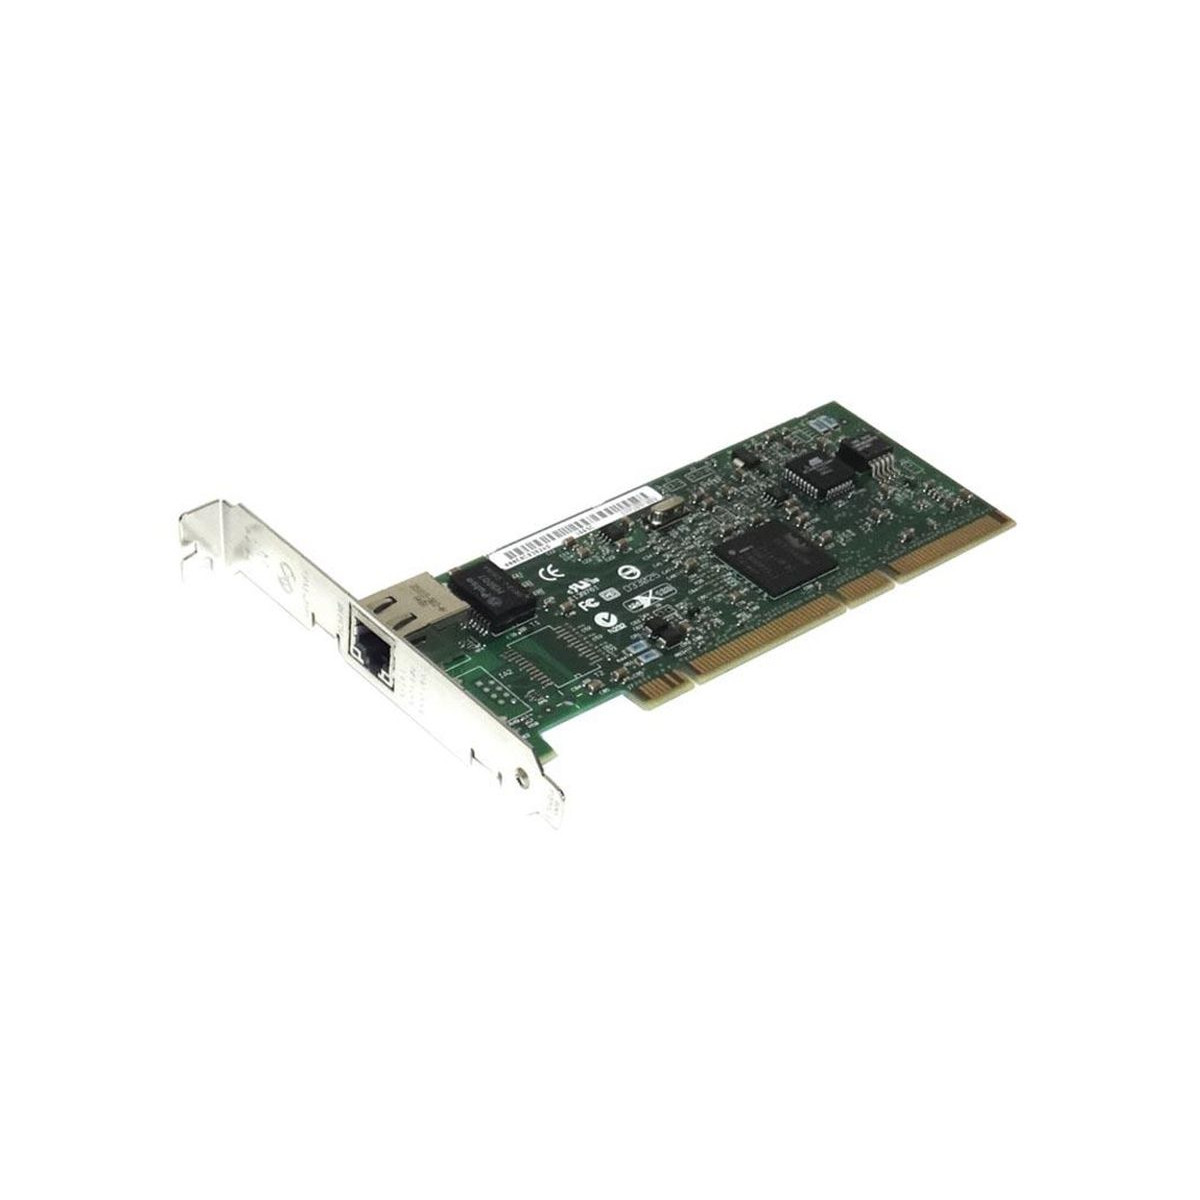 DELL INTEL PRO 1000 MT 1x1GBe PCI-x 0W1392